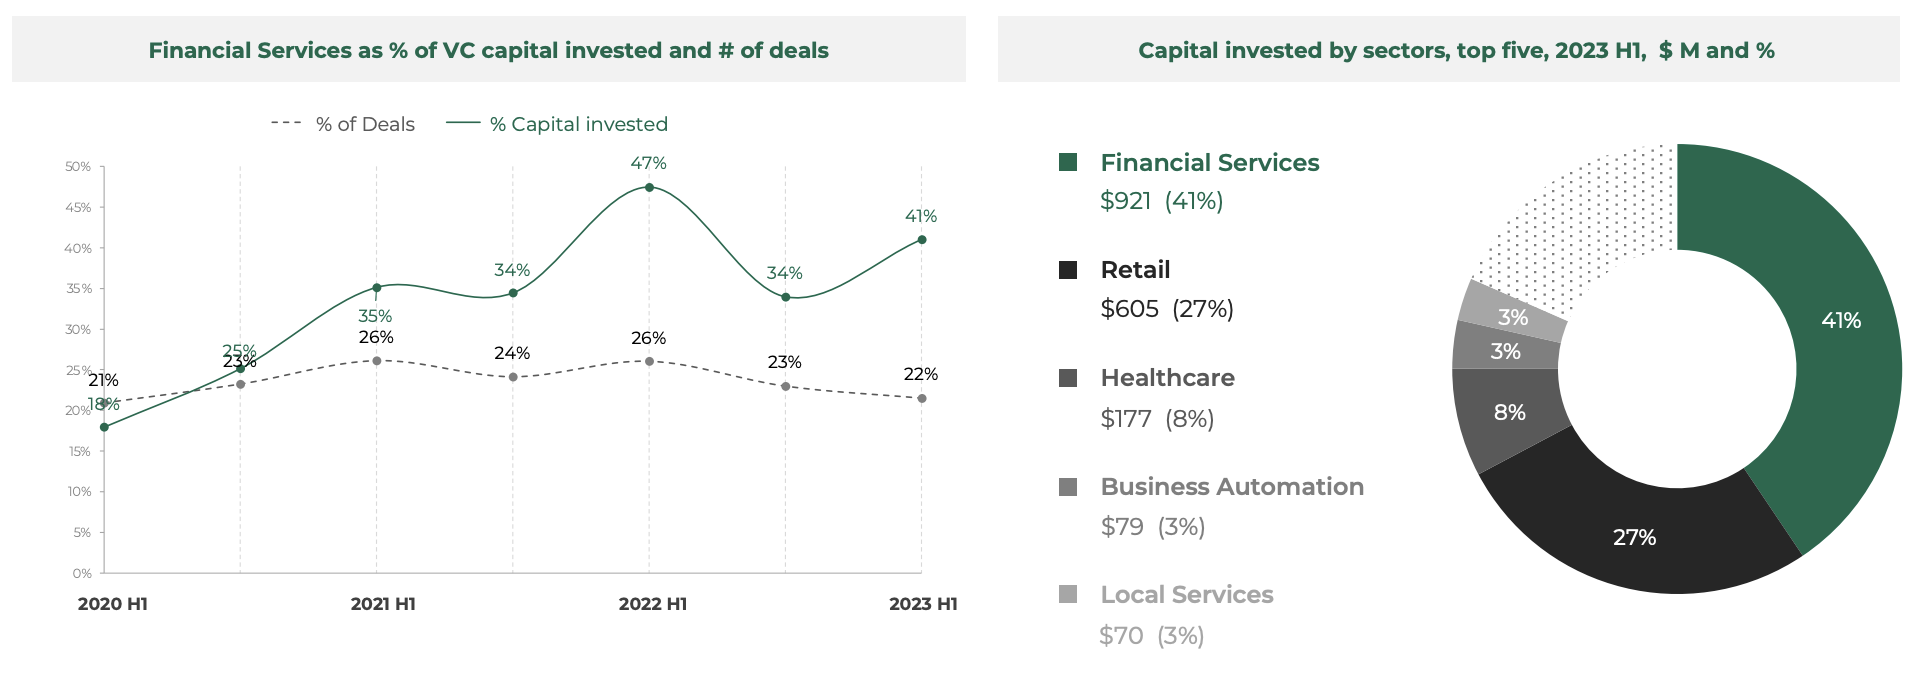 Anteil der Finanzdienstleistungen in % des investierten VC-Kapitals und Anzahl der Deals, Quelle: Southeast Asia Tech Investment 2023 H1, Cento Ventures, Dezember 2023